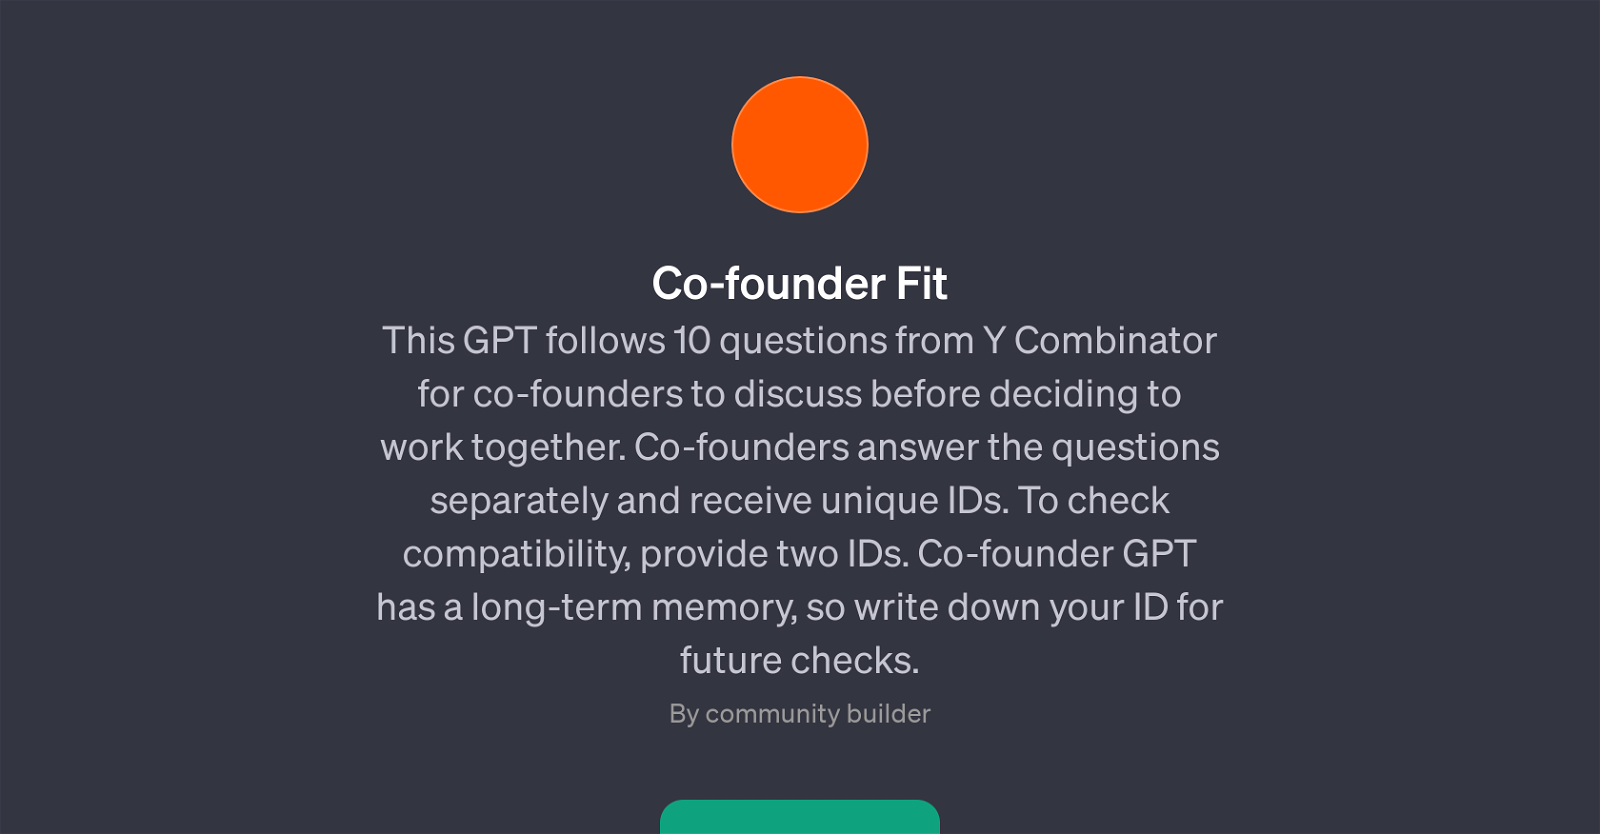 Co-founder Fit website